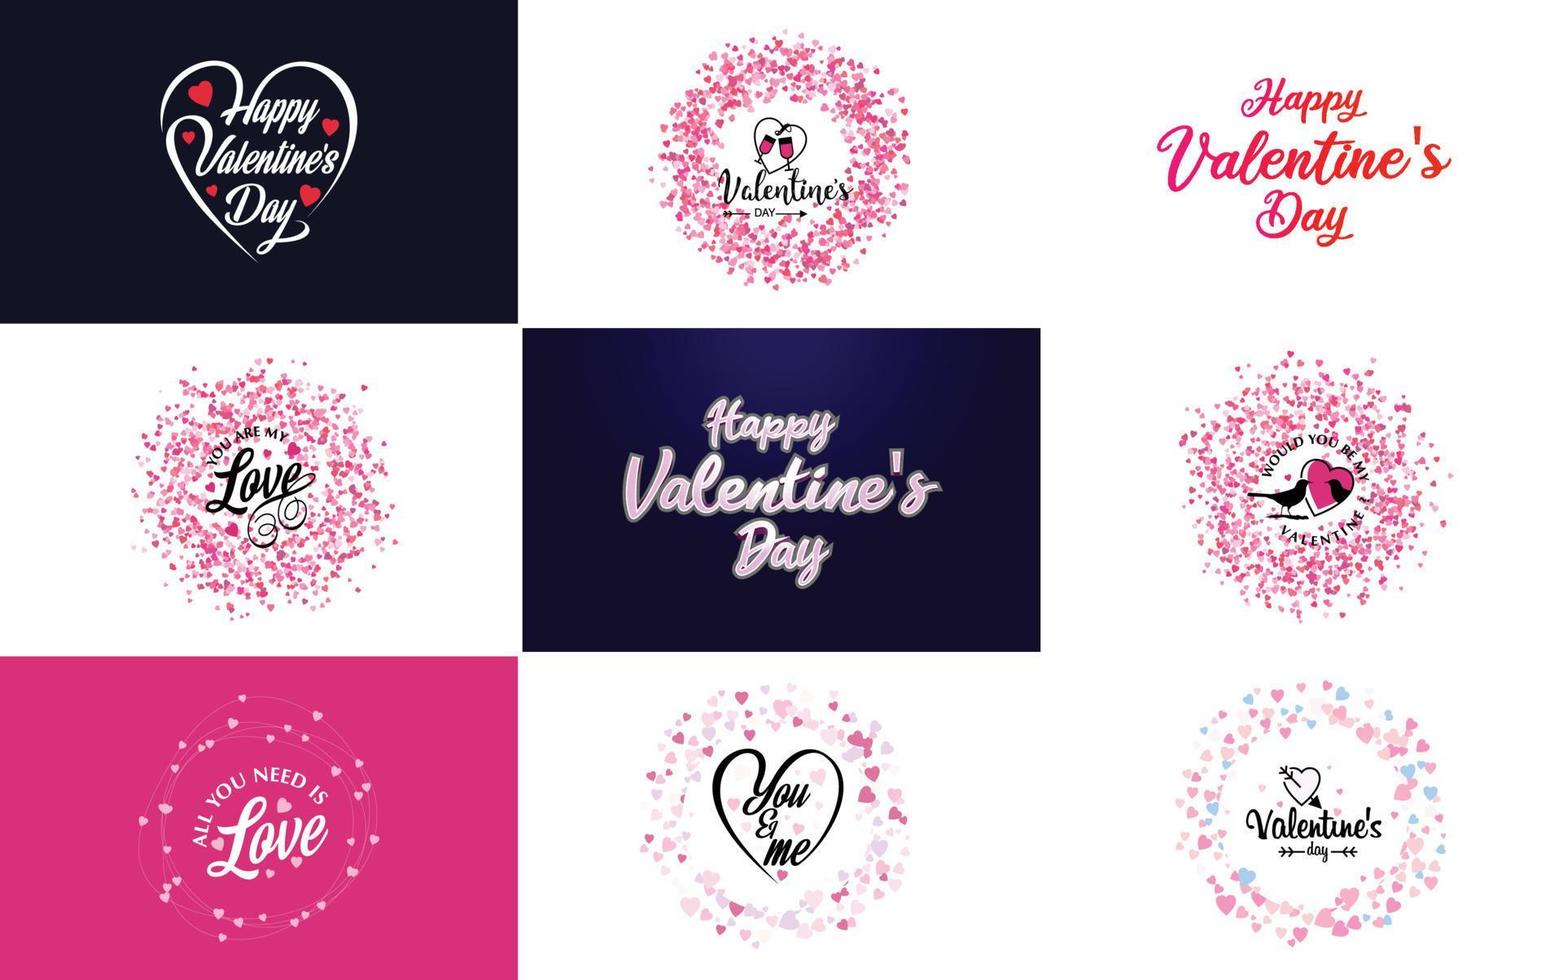 Happy Valentine's Day Grußkartenvorlage mit einem floralen Thema und einem roten und rosa Farbschema vektor